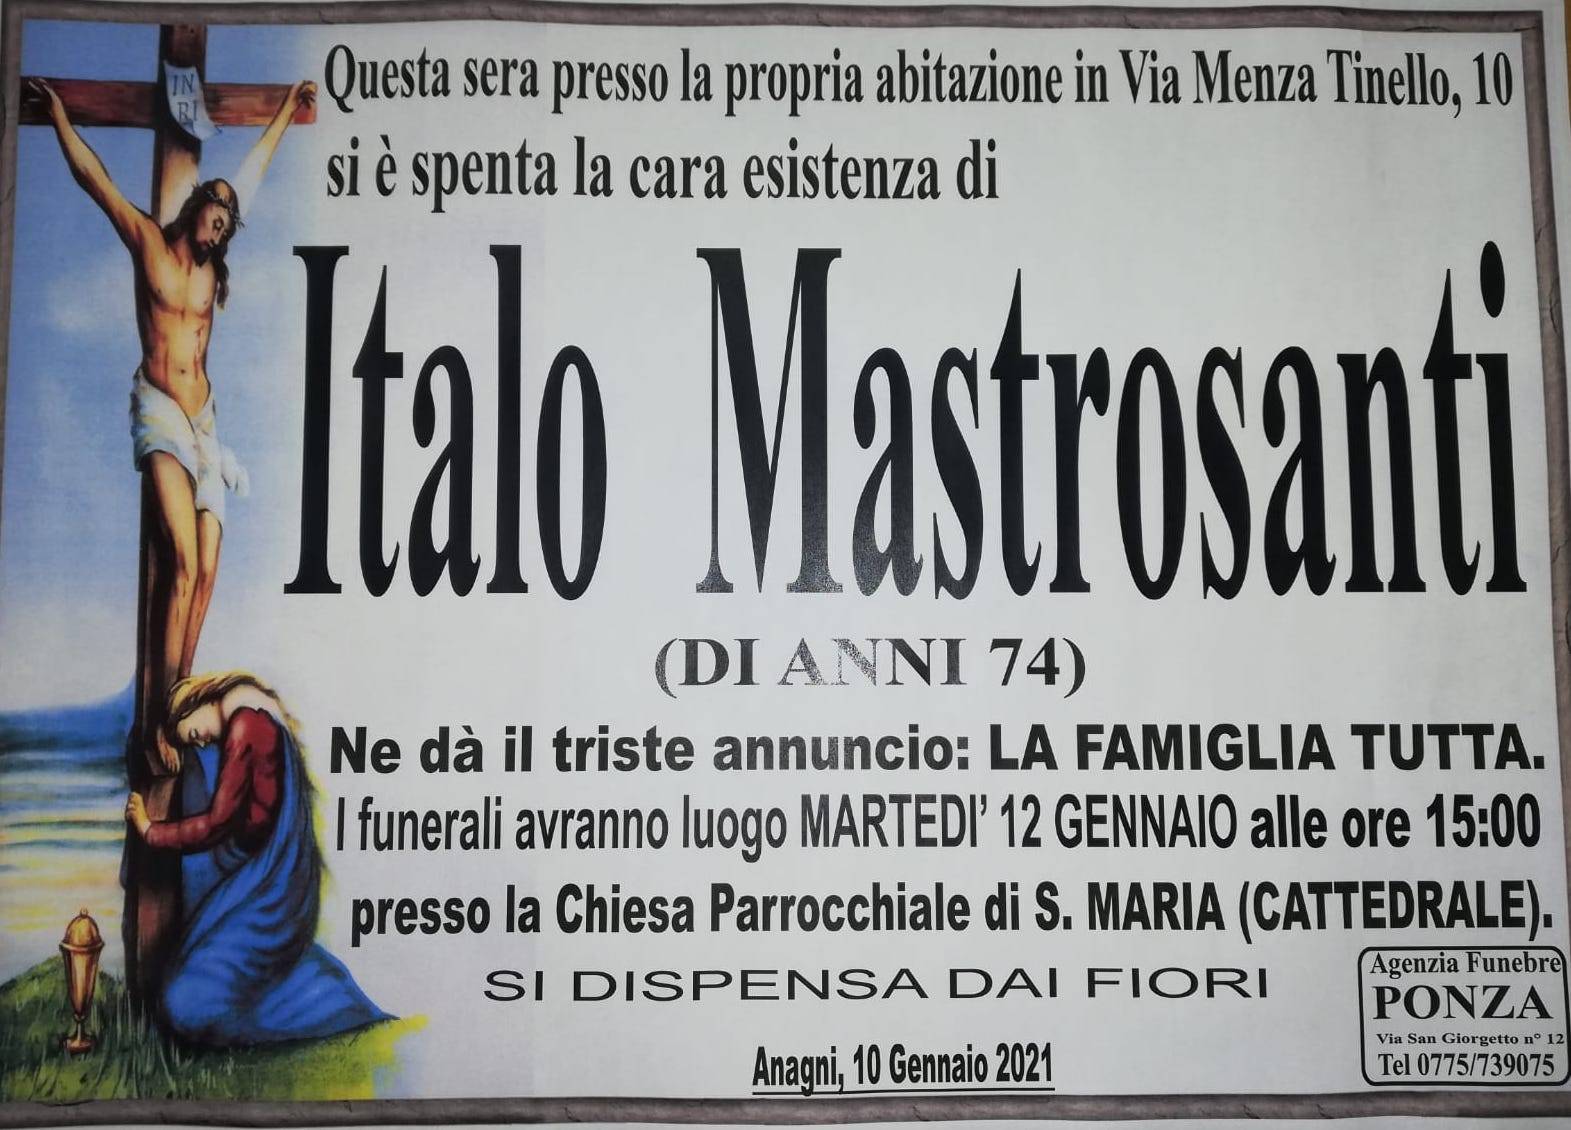 Italo Mastrosanti